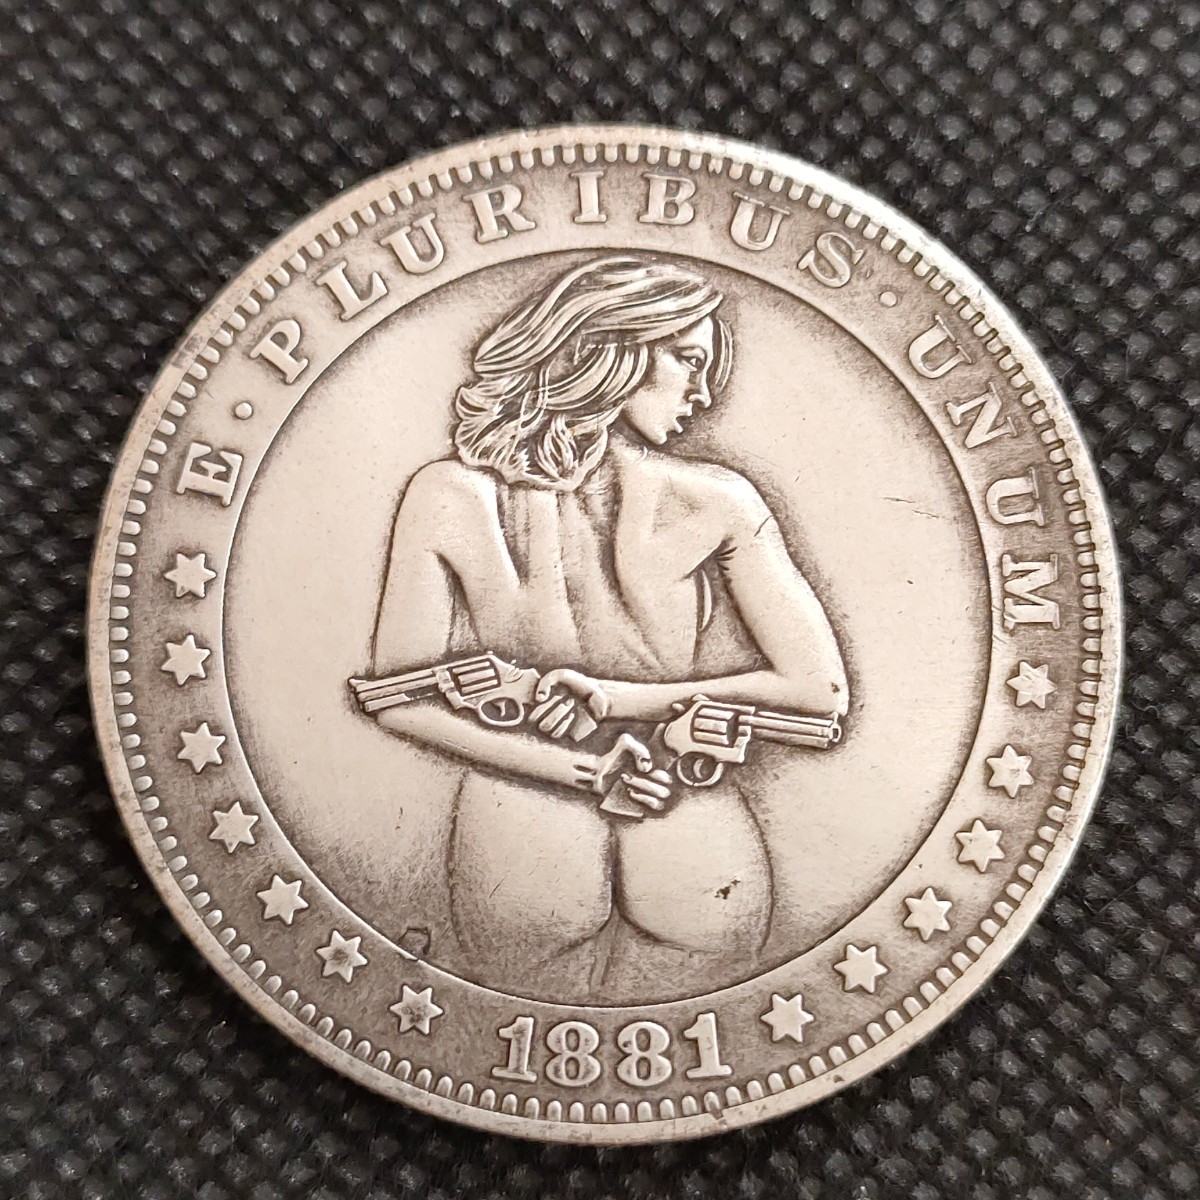 5903 アメリカ古銭 ルンペン貨幣 約38mm イーグル チャレンジコイン コイン アンティーク ホーボーの画像1